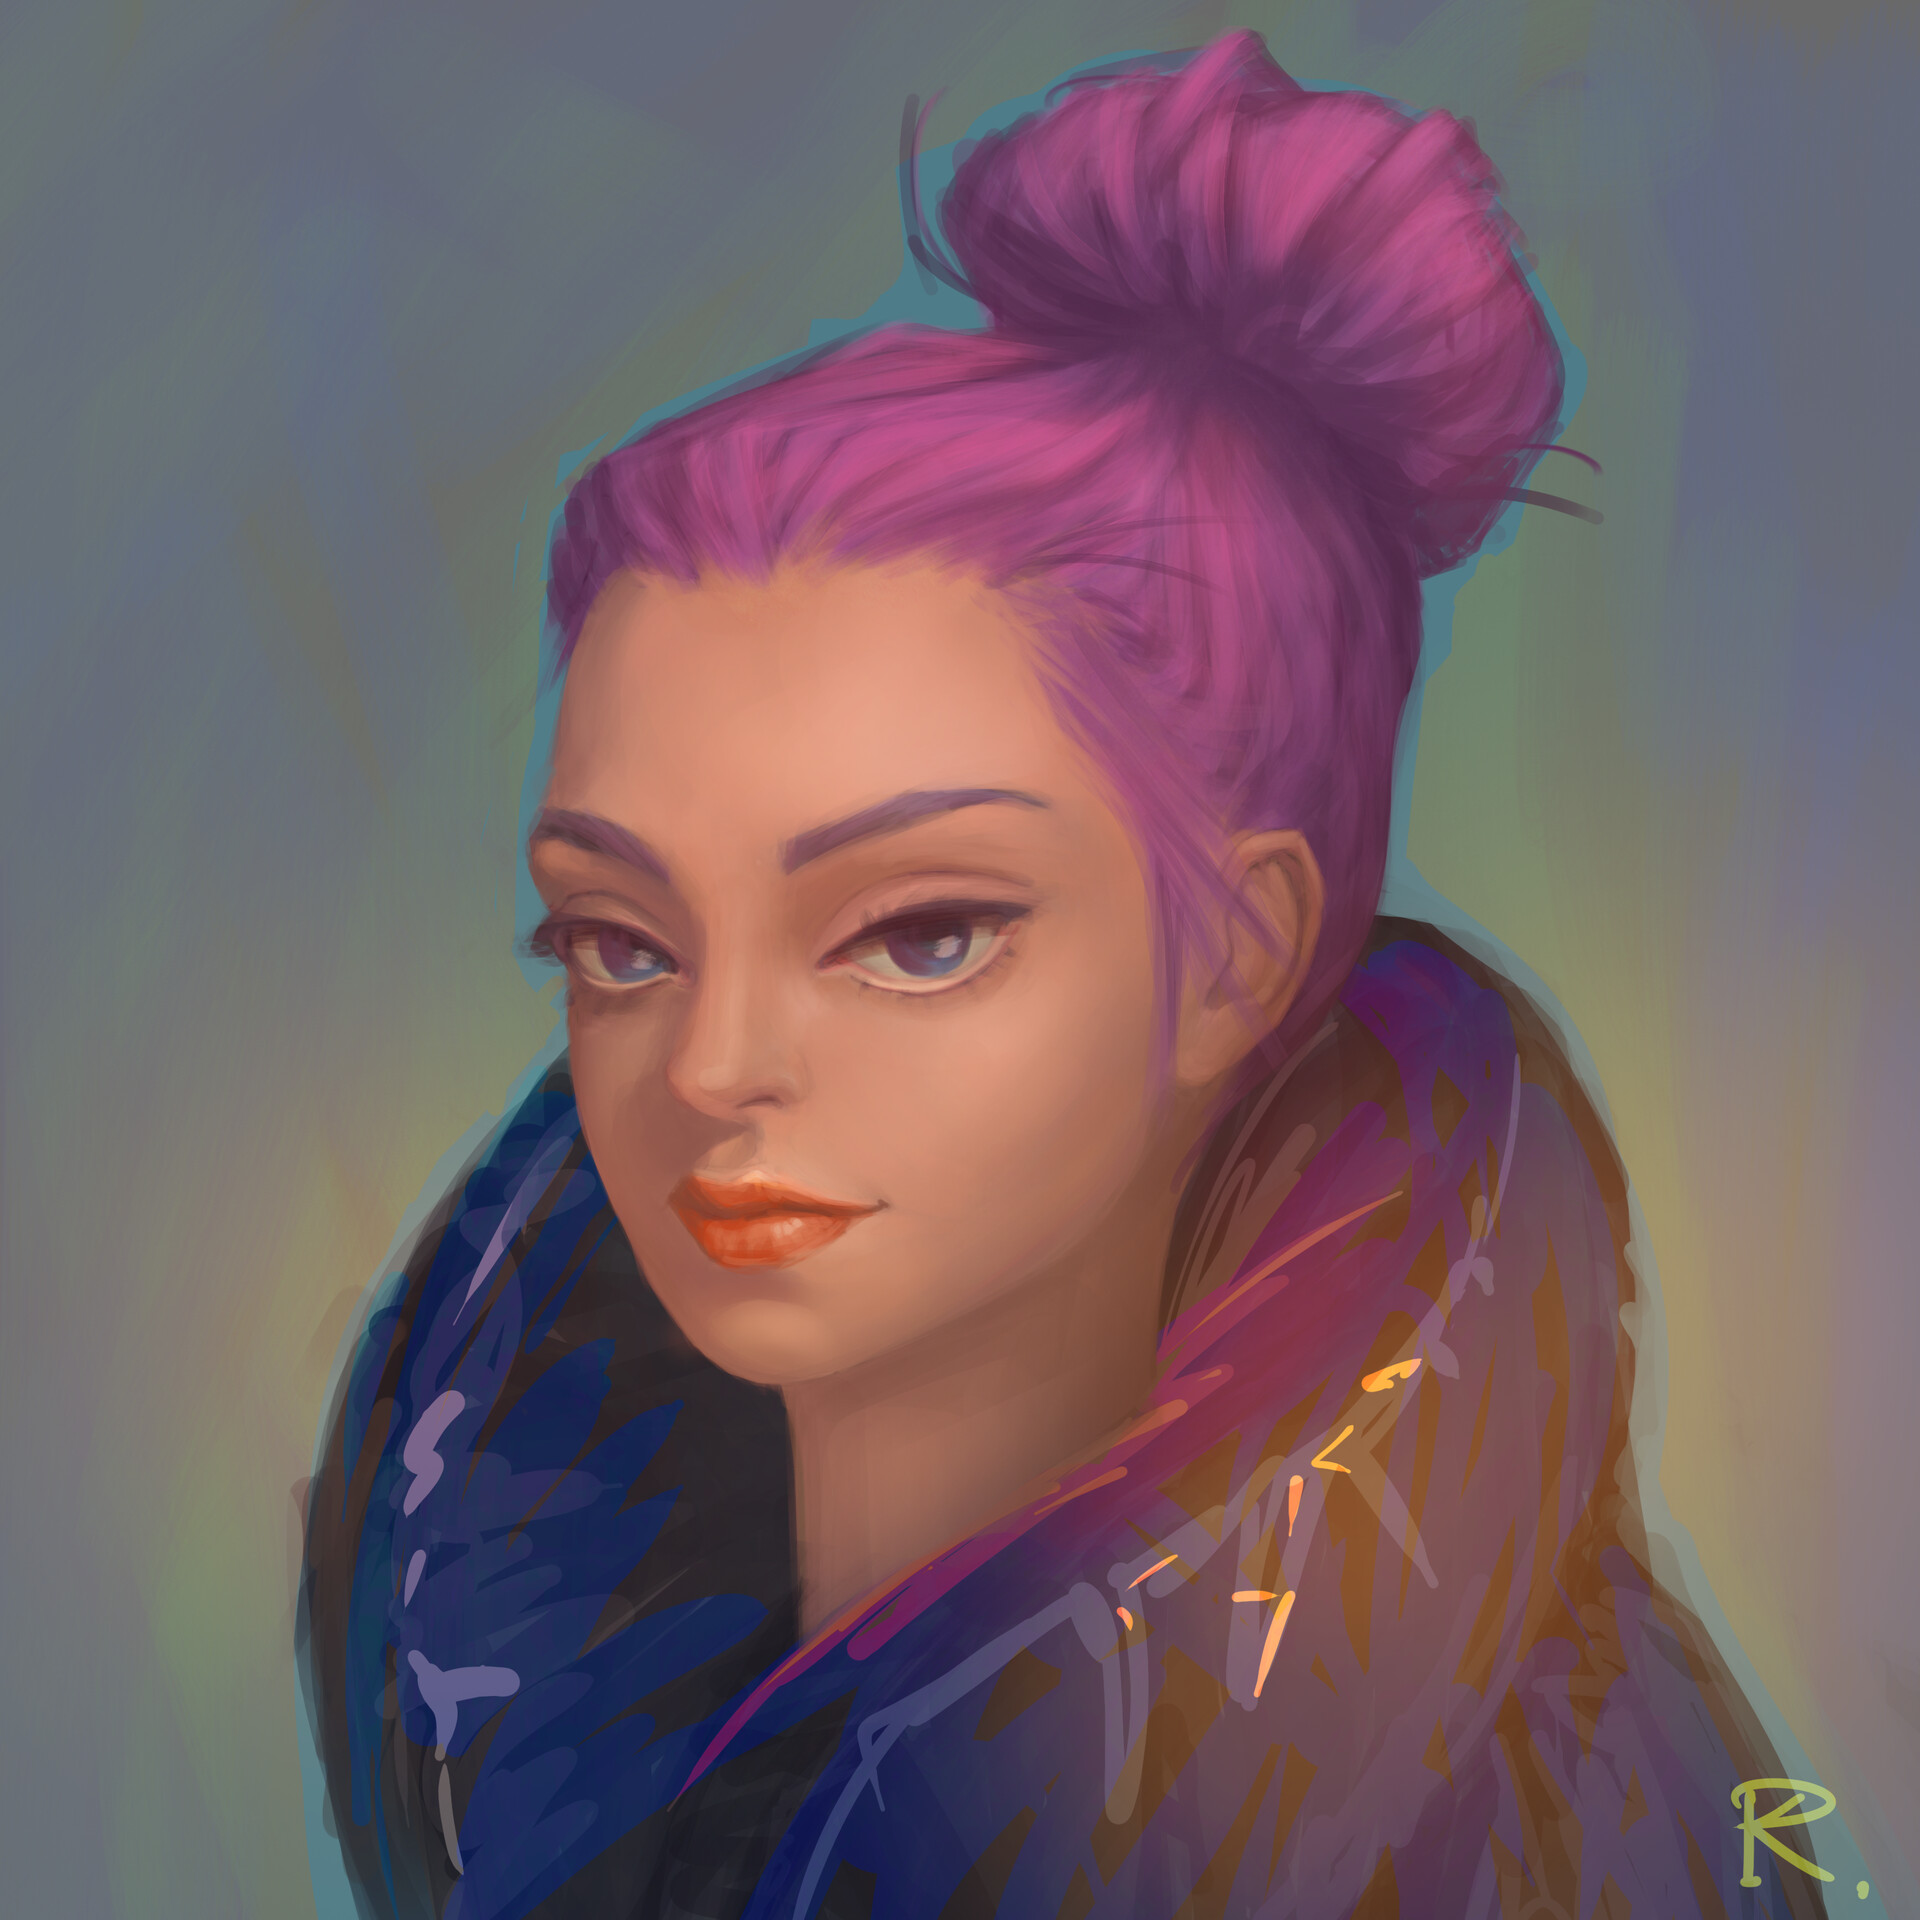 ArtStation - Girl portrait